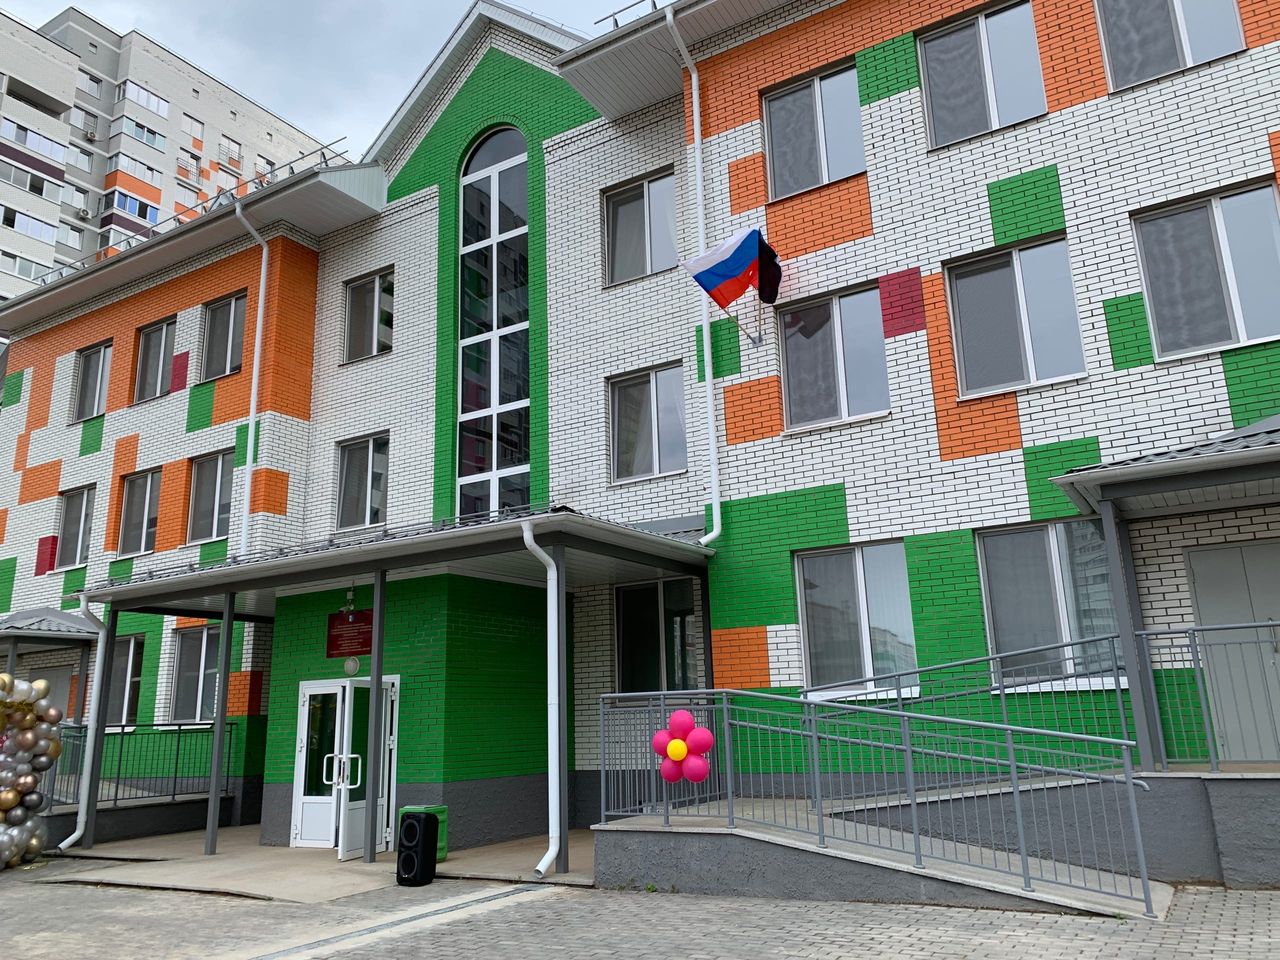 

Супер детки: в Ижевске открылся второй корпус детского сада на улице Берша

